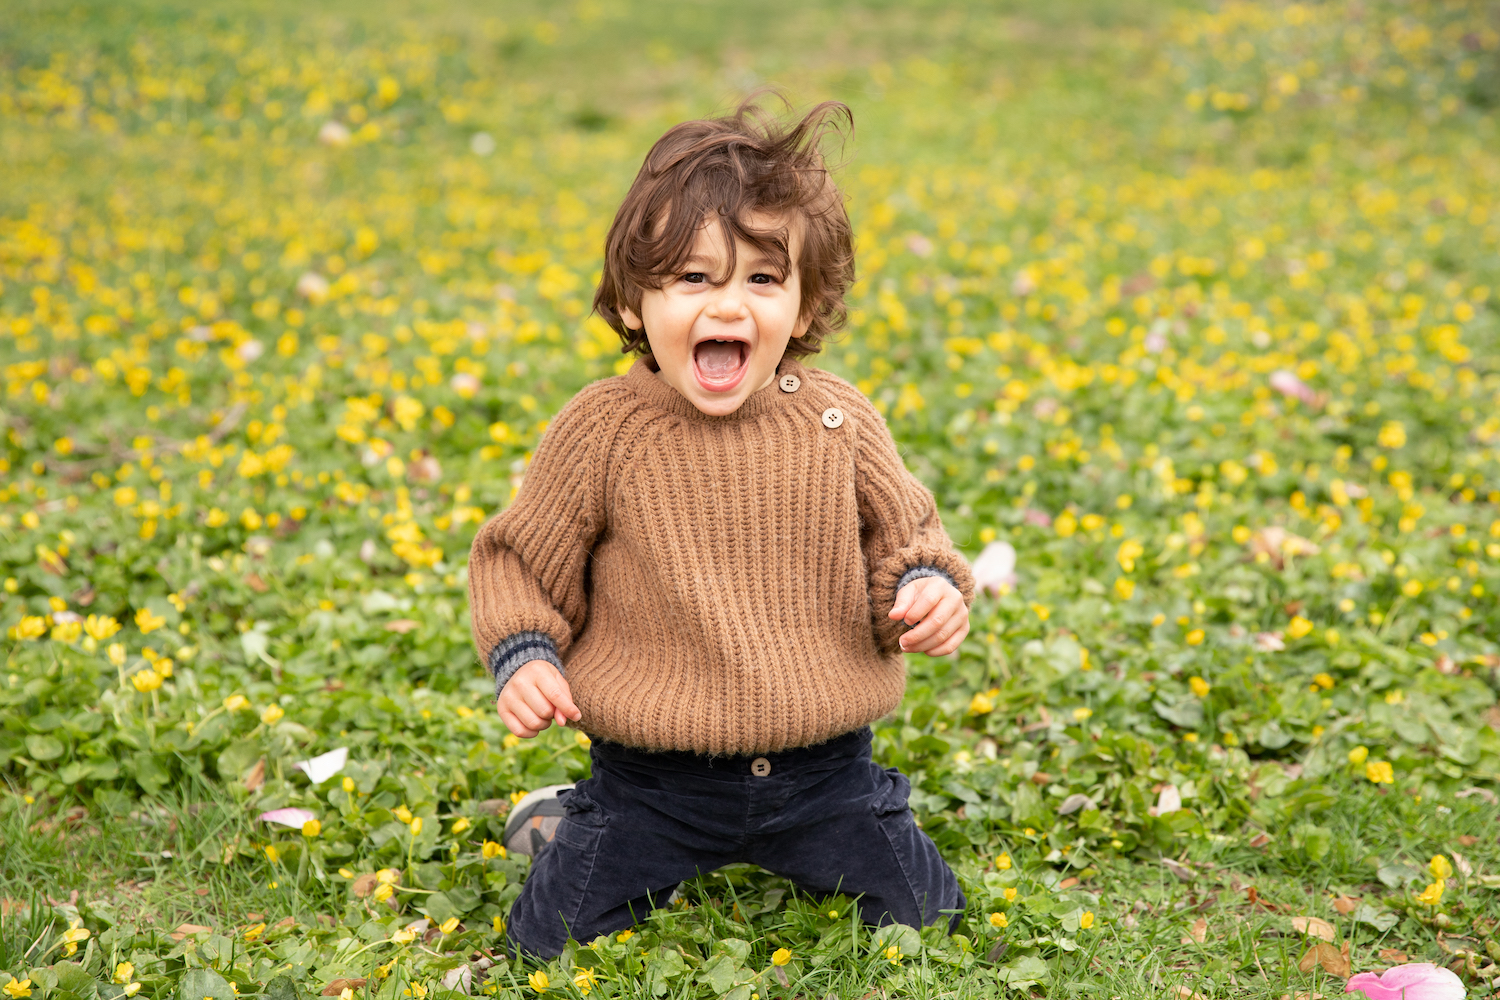 A boy kneeling in a field of flowers.